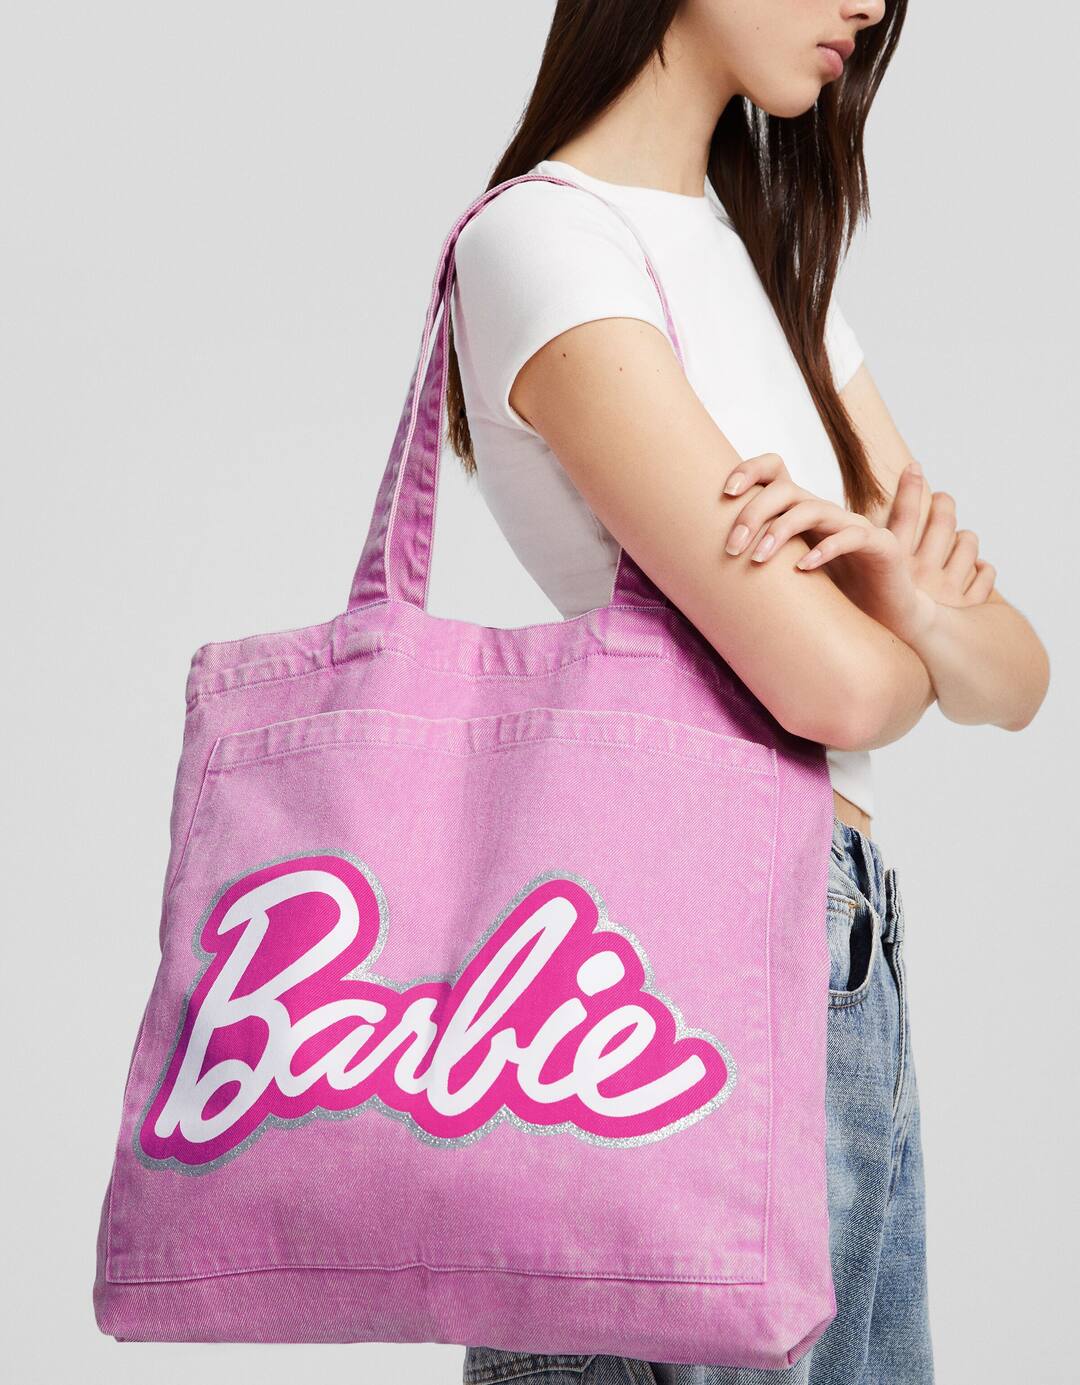 Barbie shopper bag